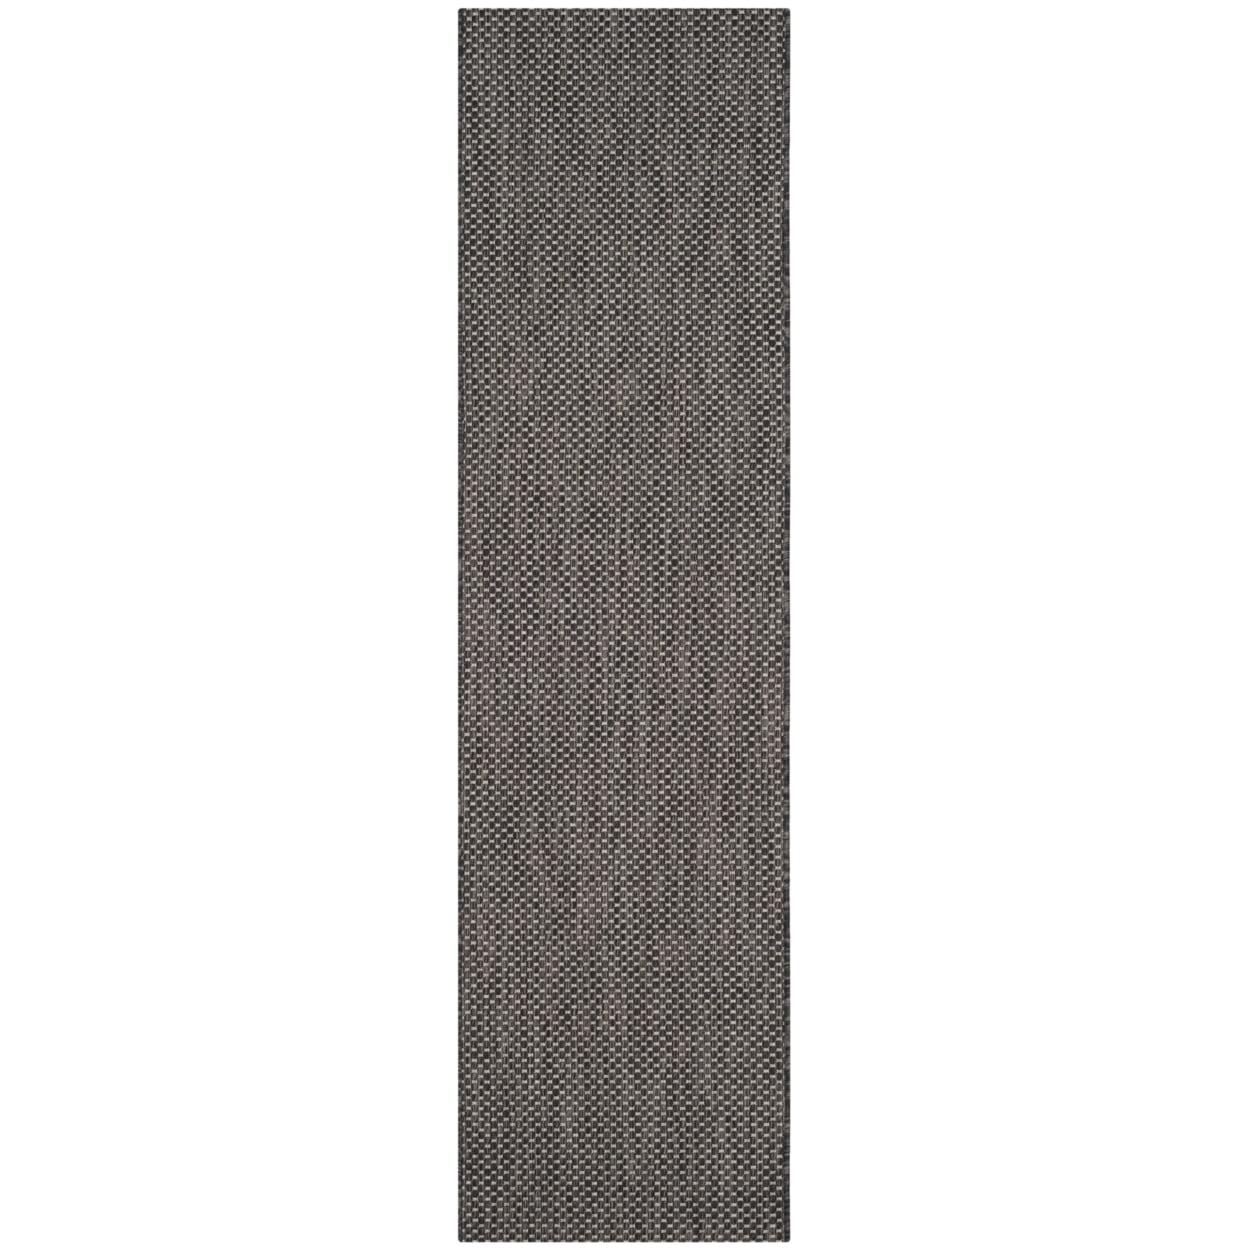 Elegant Black & Beige Checkered 2'3" x 12' Indoor/Outdoor Runner